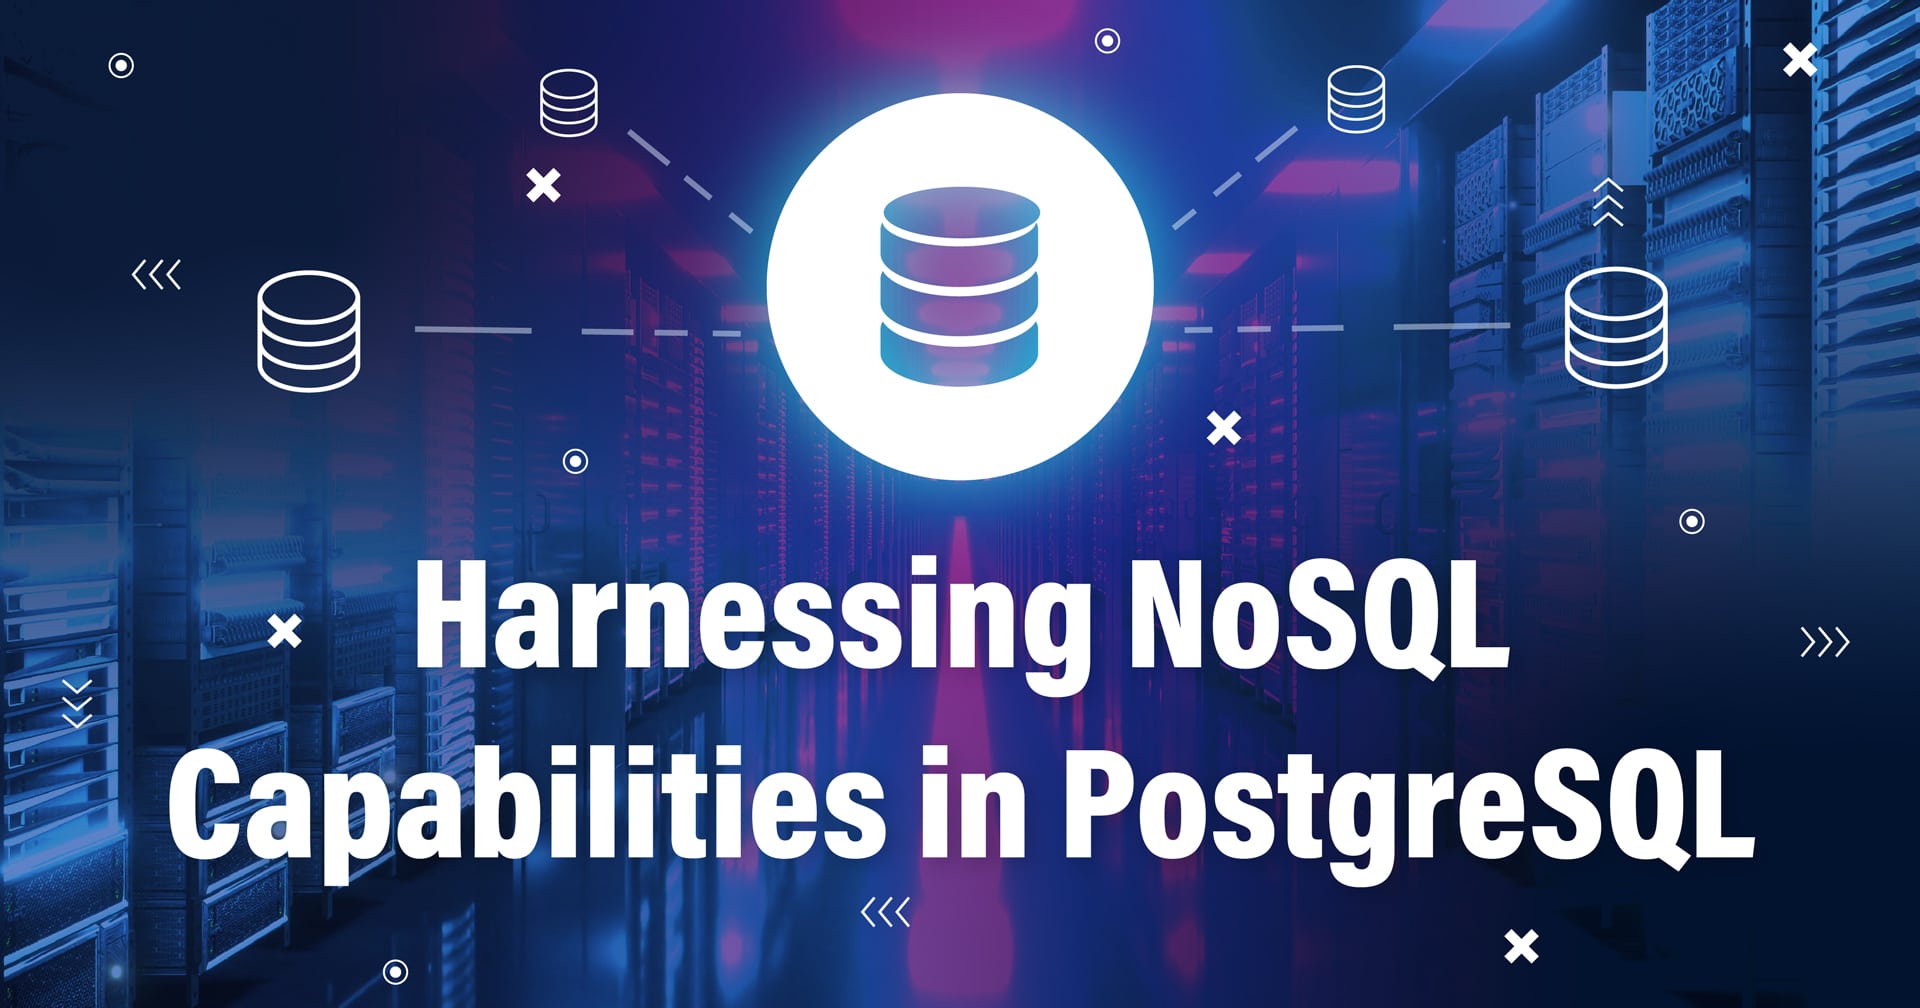 他のデータベースと接続されたデータベースを表すシンボルと、PostgreSQLにおけるNoSQL機能の活用というテキストが下部に表示された画像。